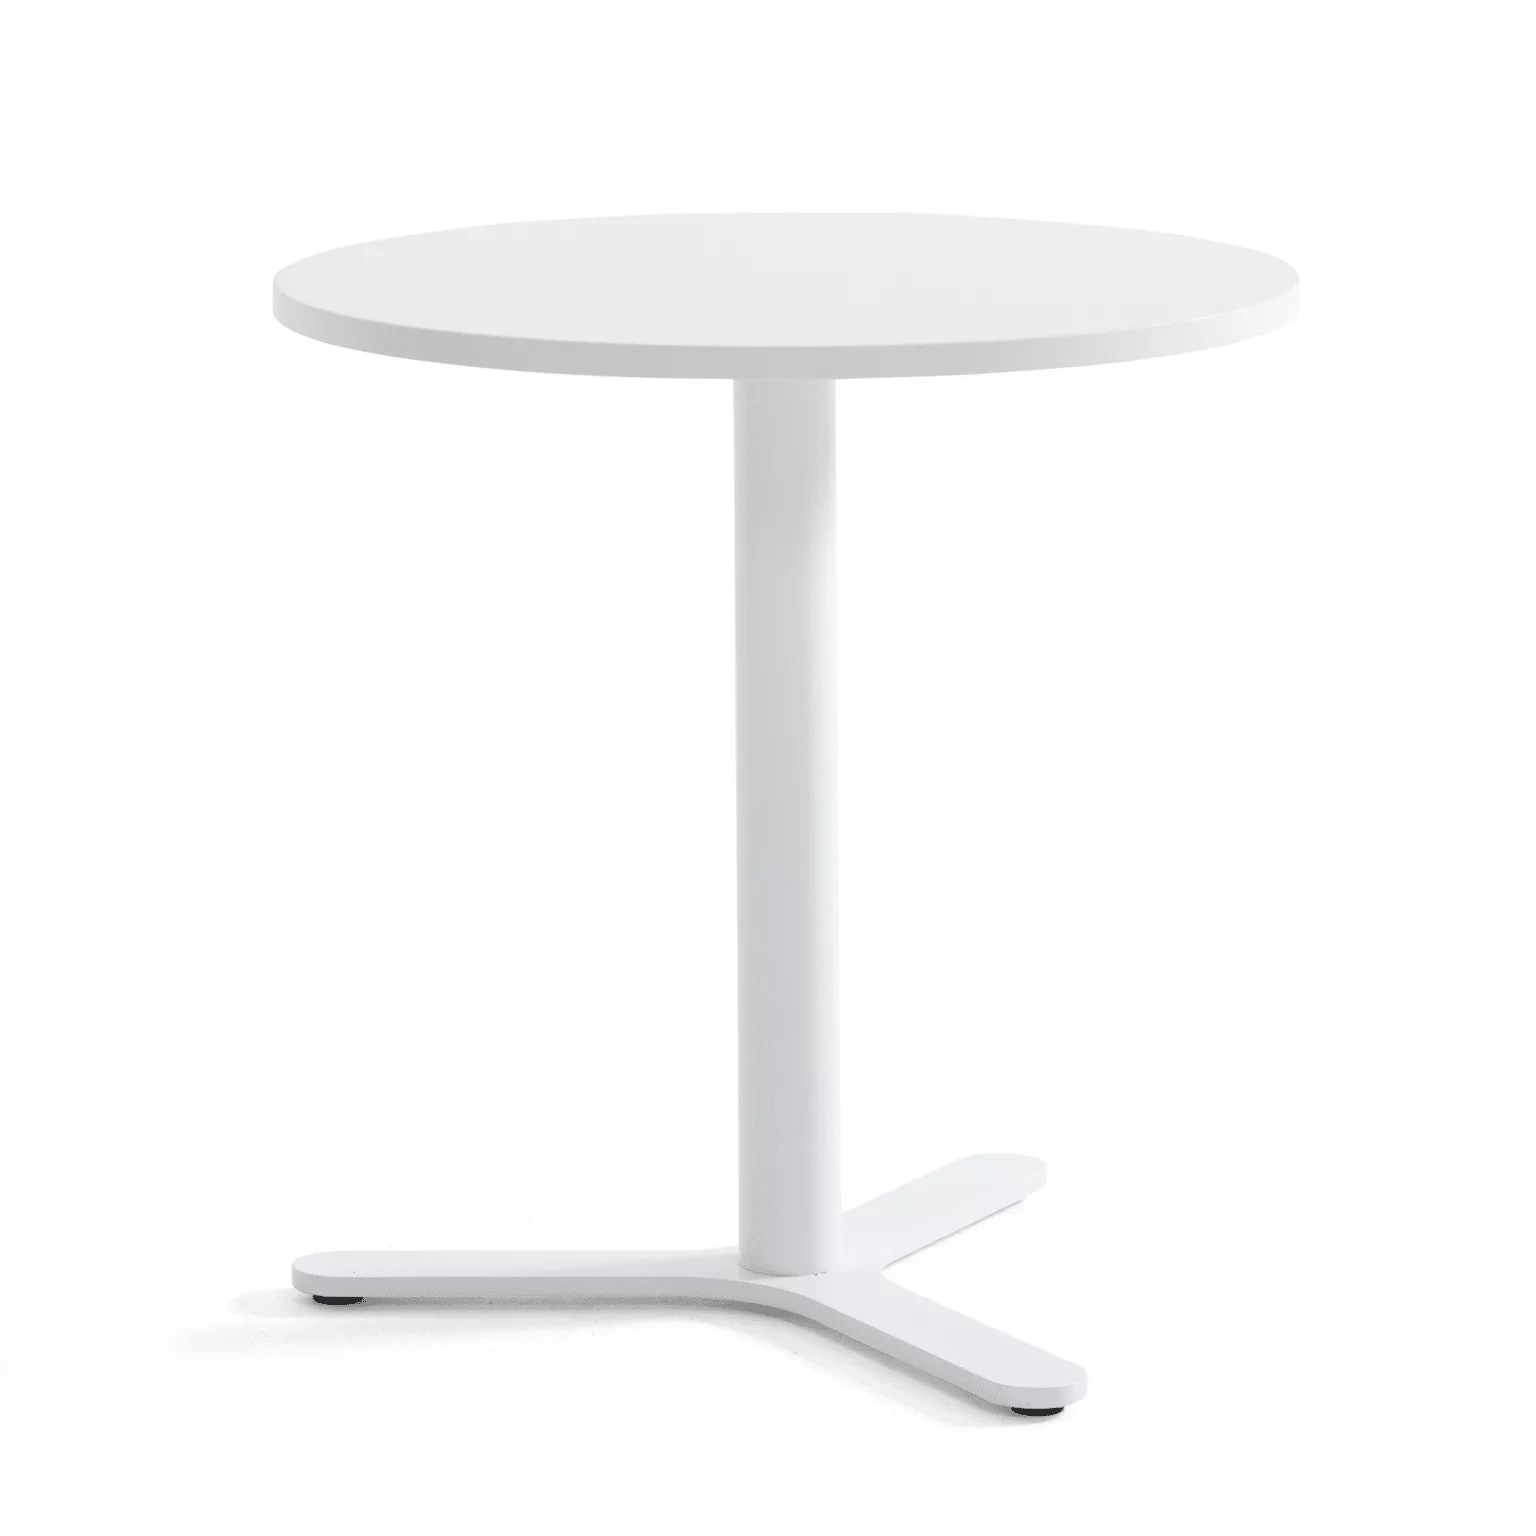 Witte ronde tafel met metalen driepoot onderstel.